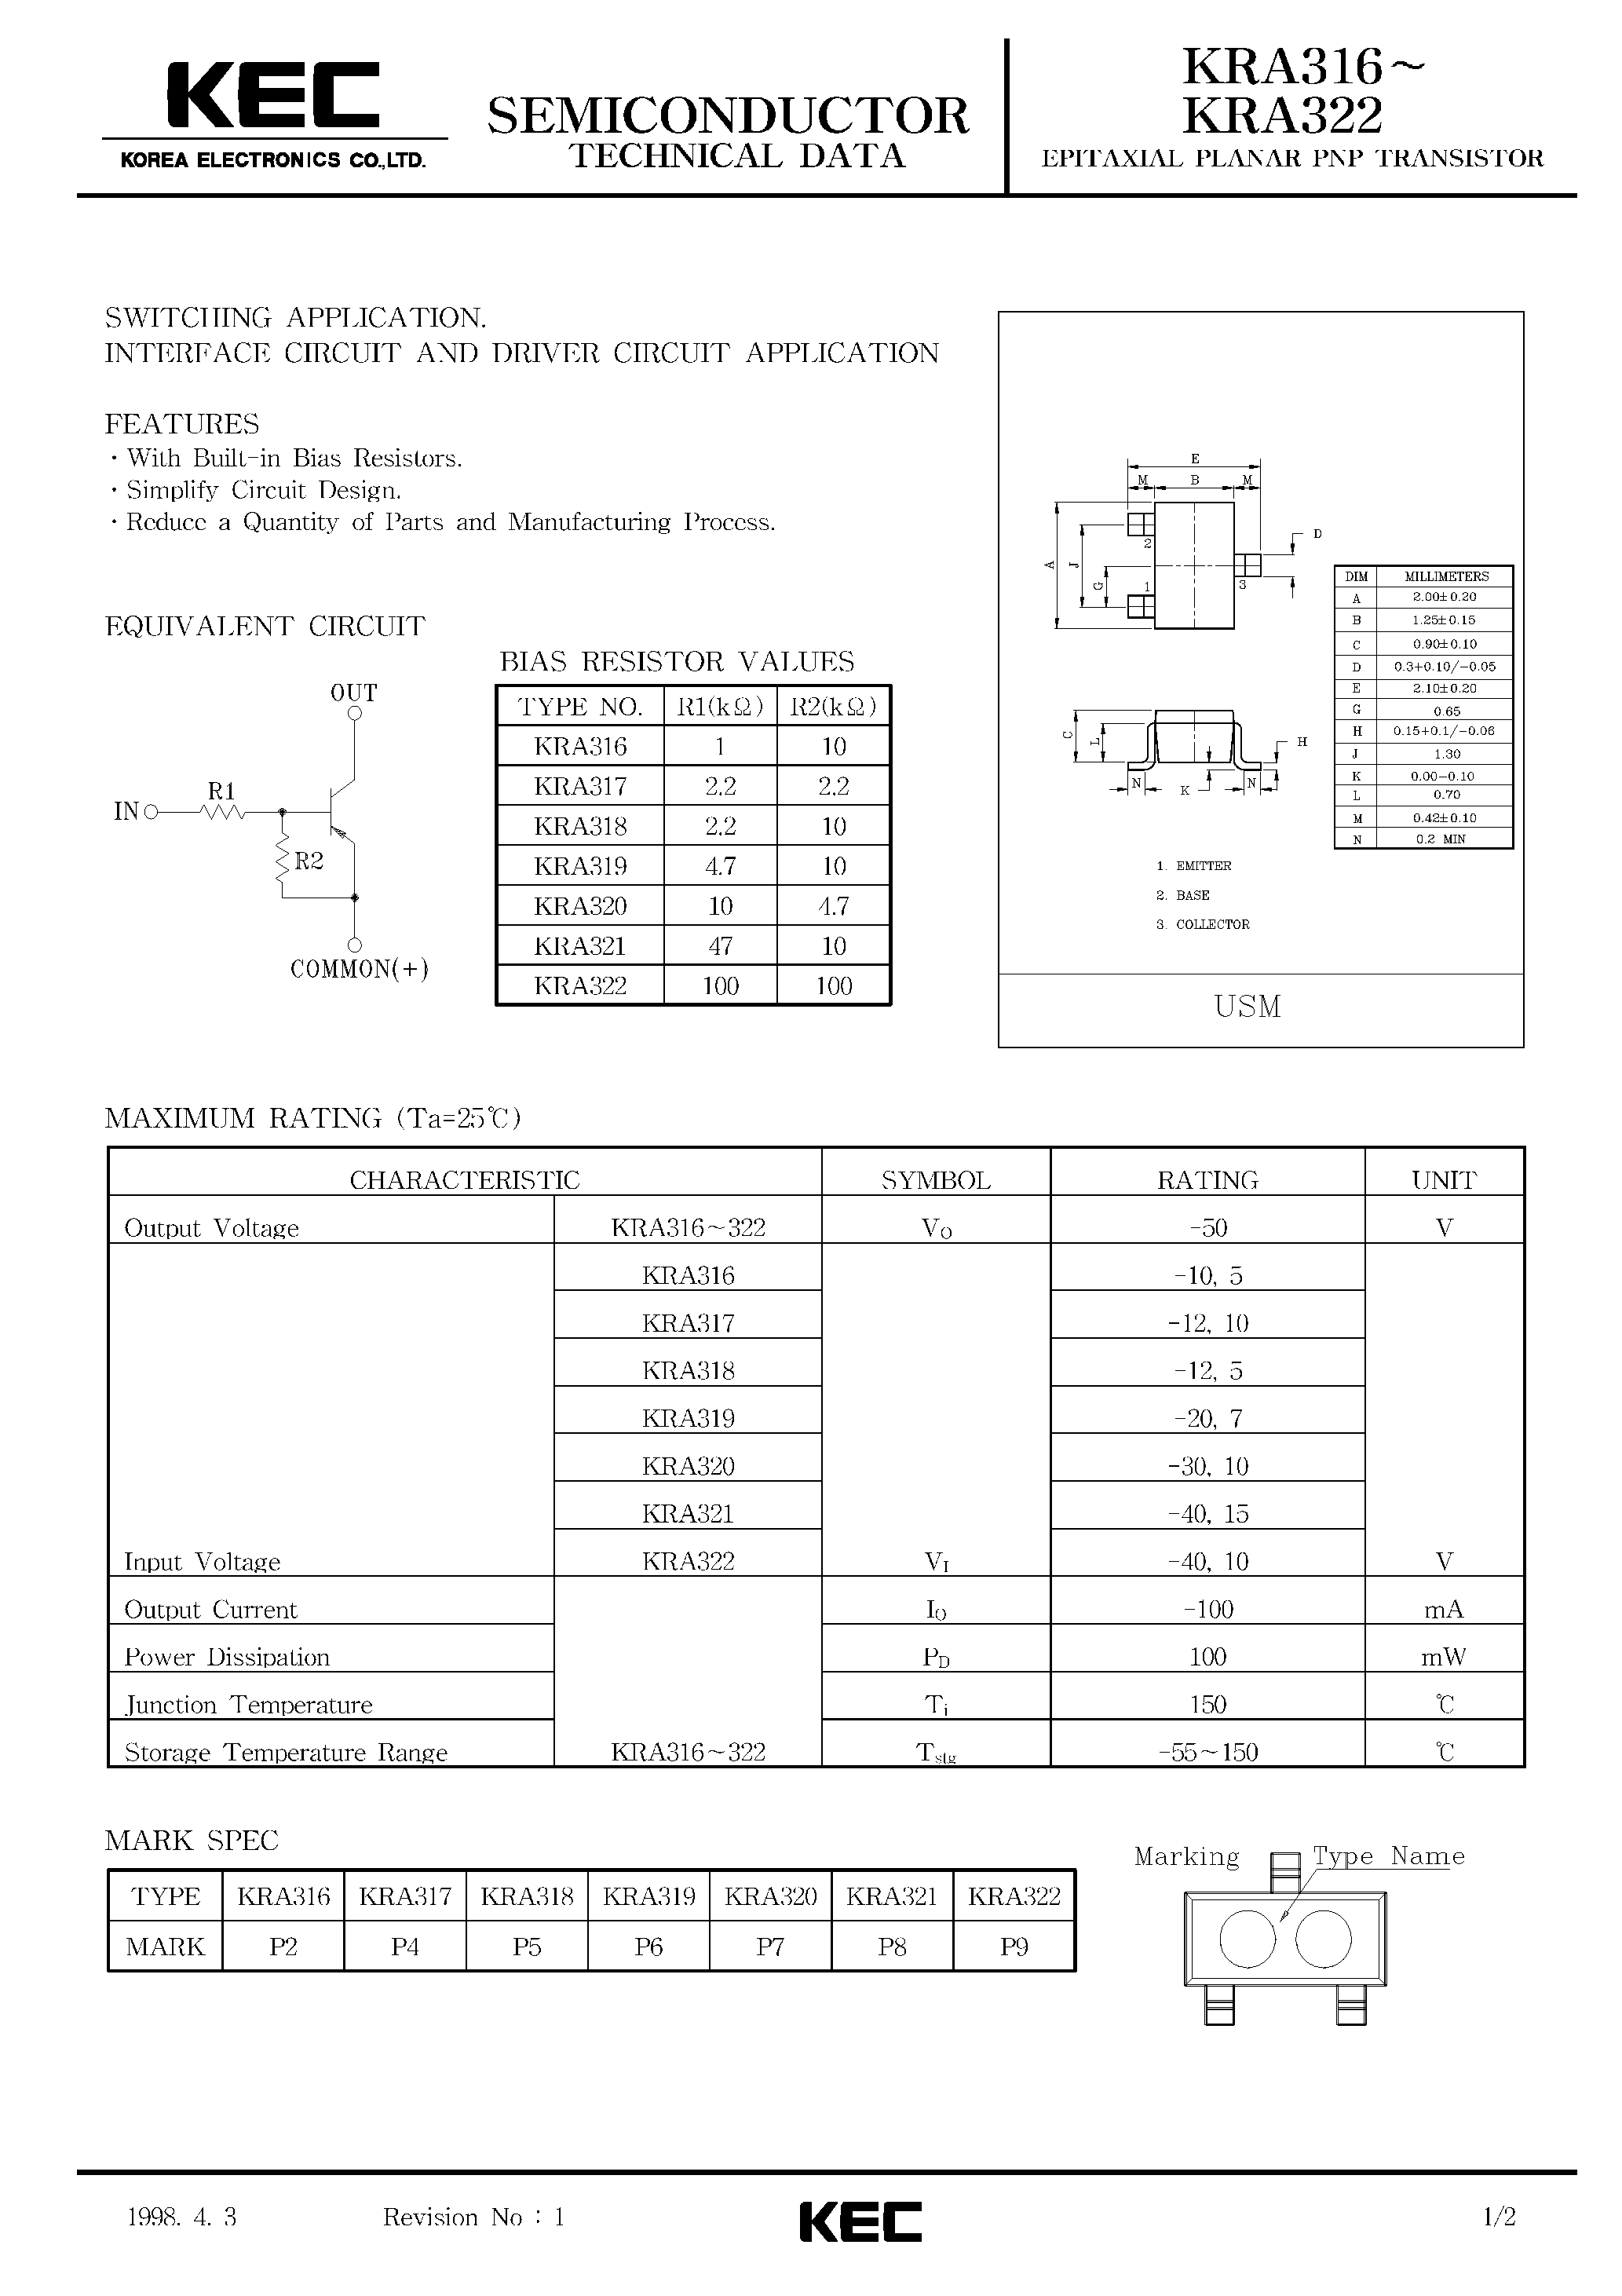 Datasheet KRA316 - (KRA316 - KRA322) EPITAXIAL PLANAR PNP TRANSISTOR page 1